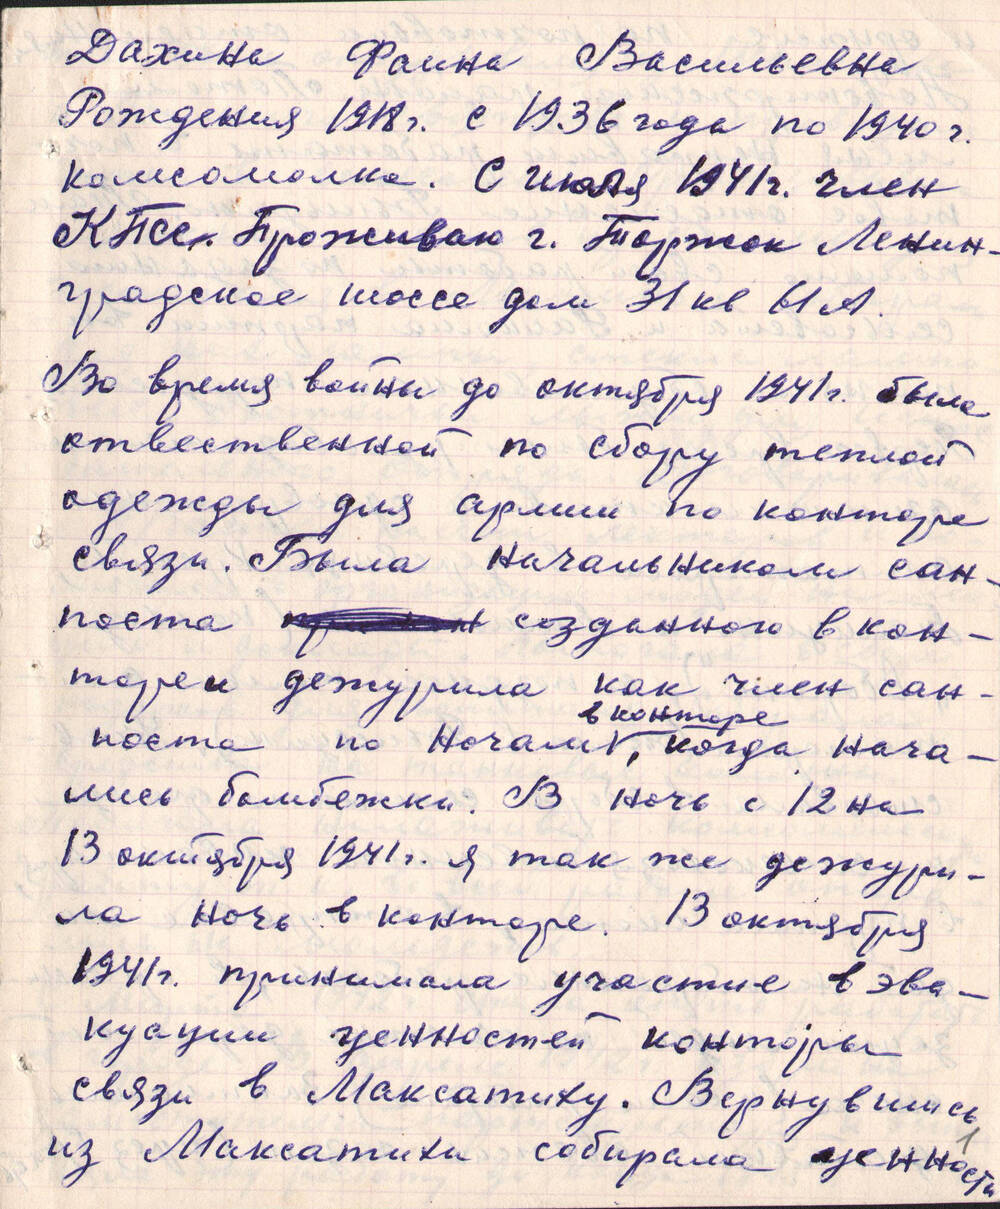 Воспоминания Ф.В. Дахиной, работницы почты о своей деятельности во время войны